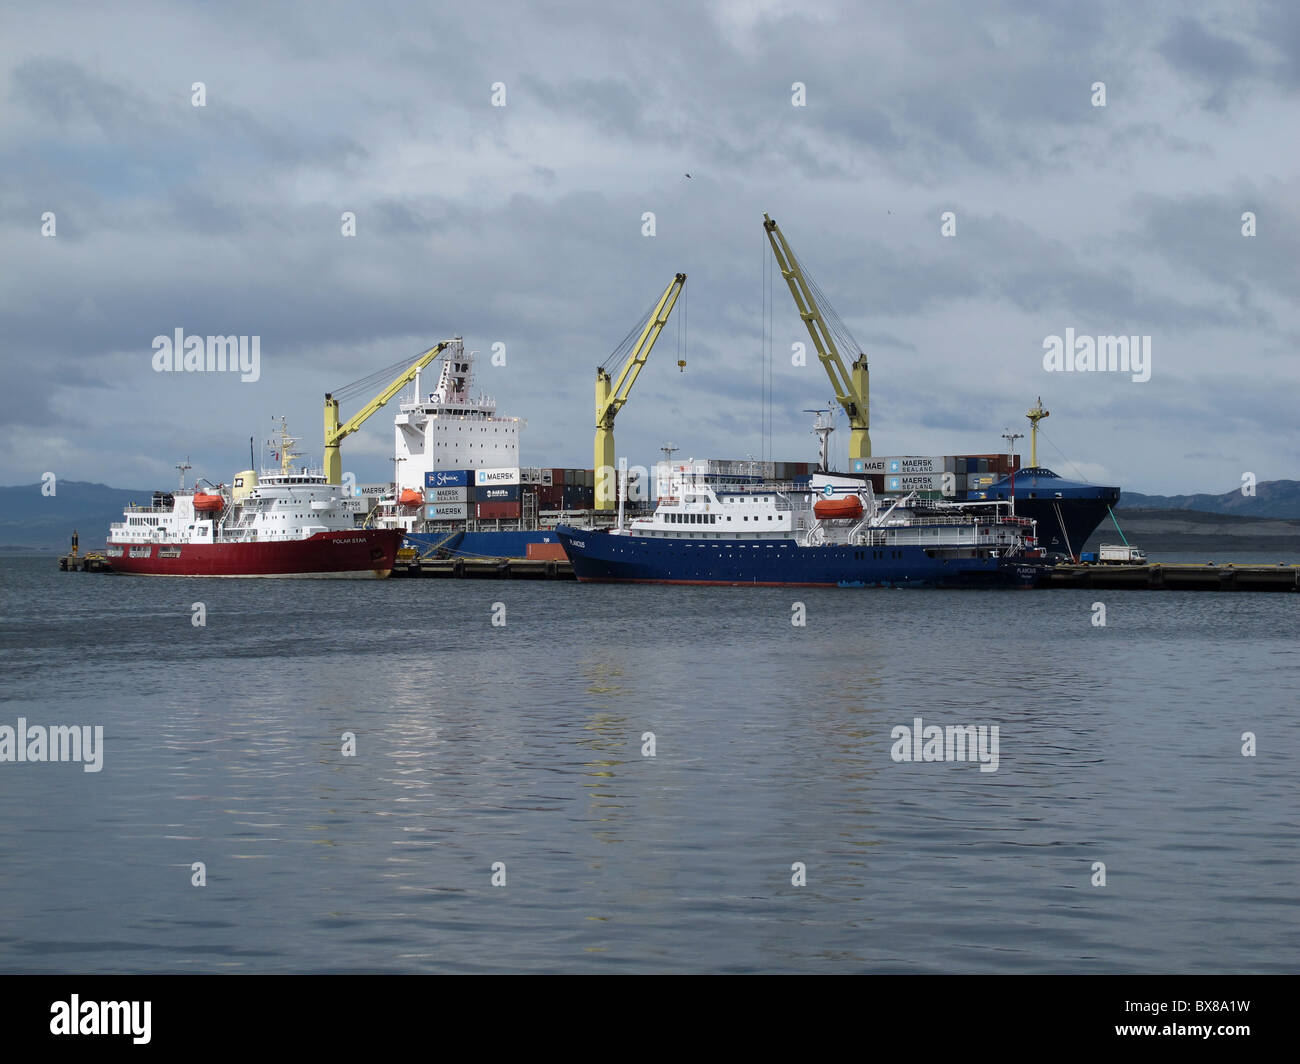 Passenger Ships 'Plancius', 'Polar Star' and a cargo ship at the pier, Ushuaia, Tierra del Fuego, Argentina Stock Photo